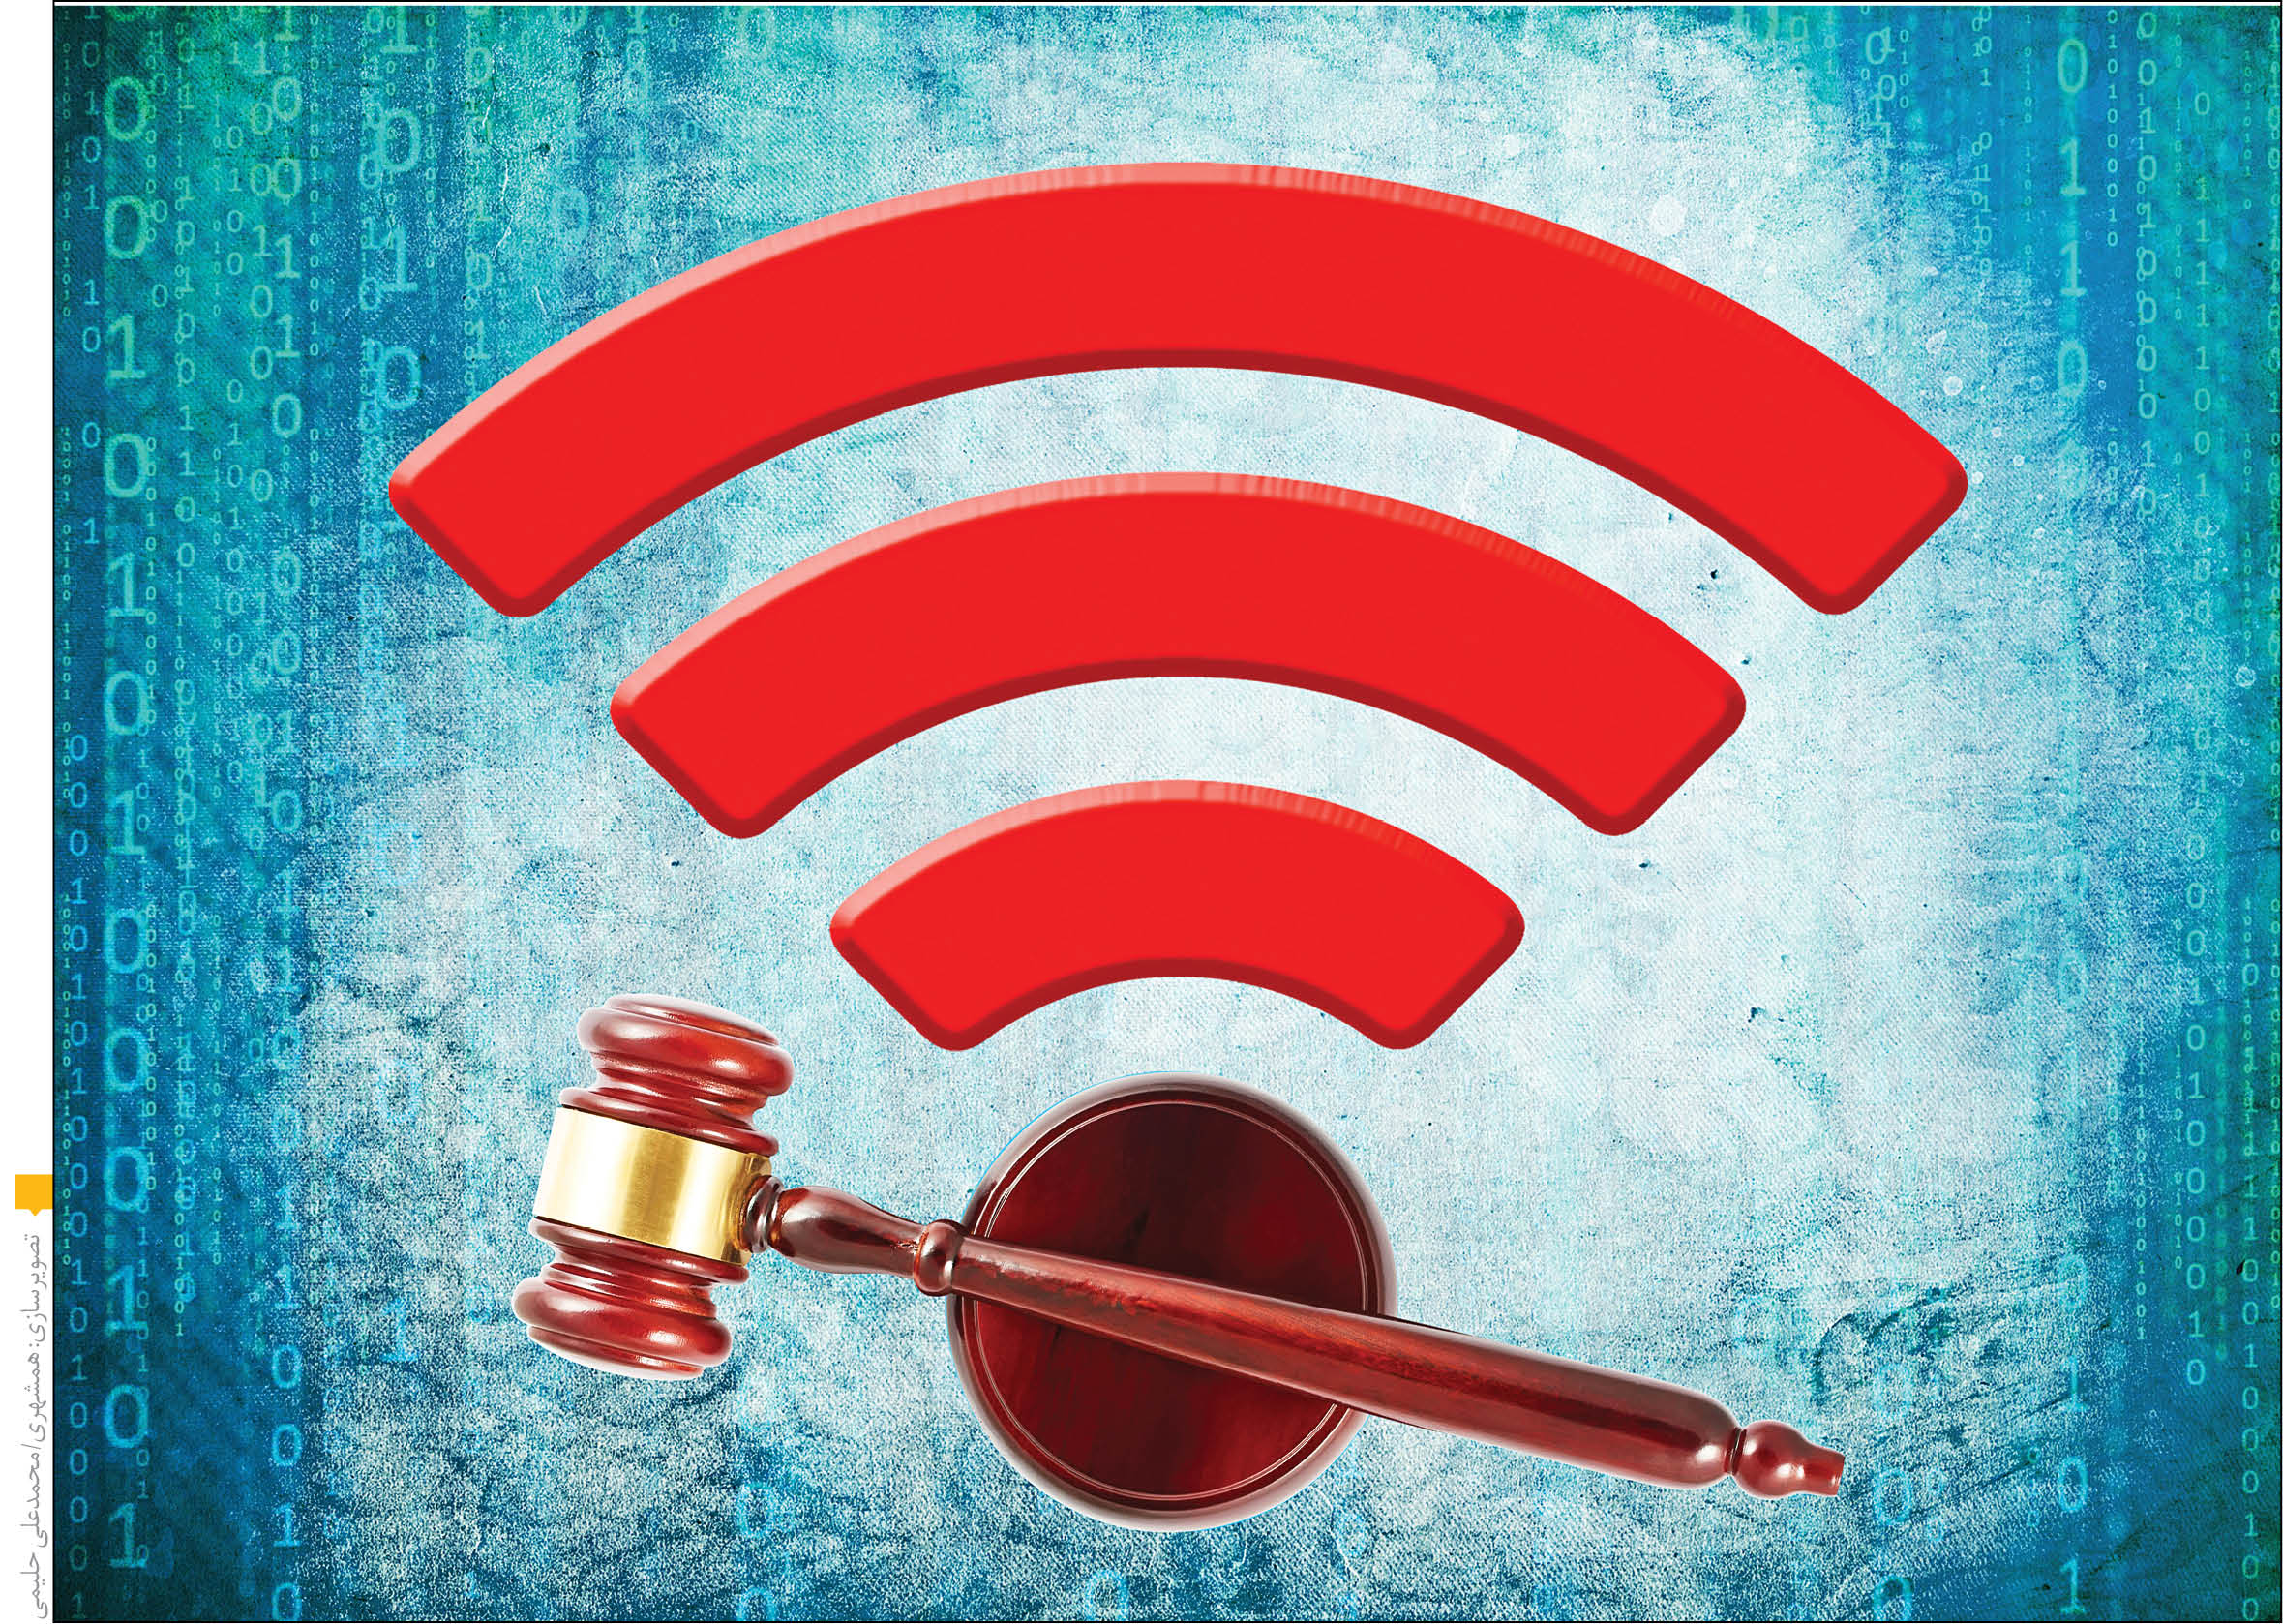 پیگرد قضایی برای عاملان اختلال اینترنت